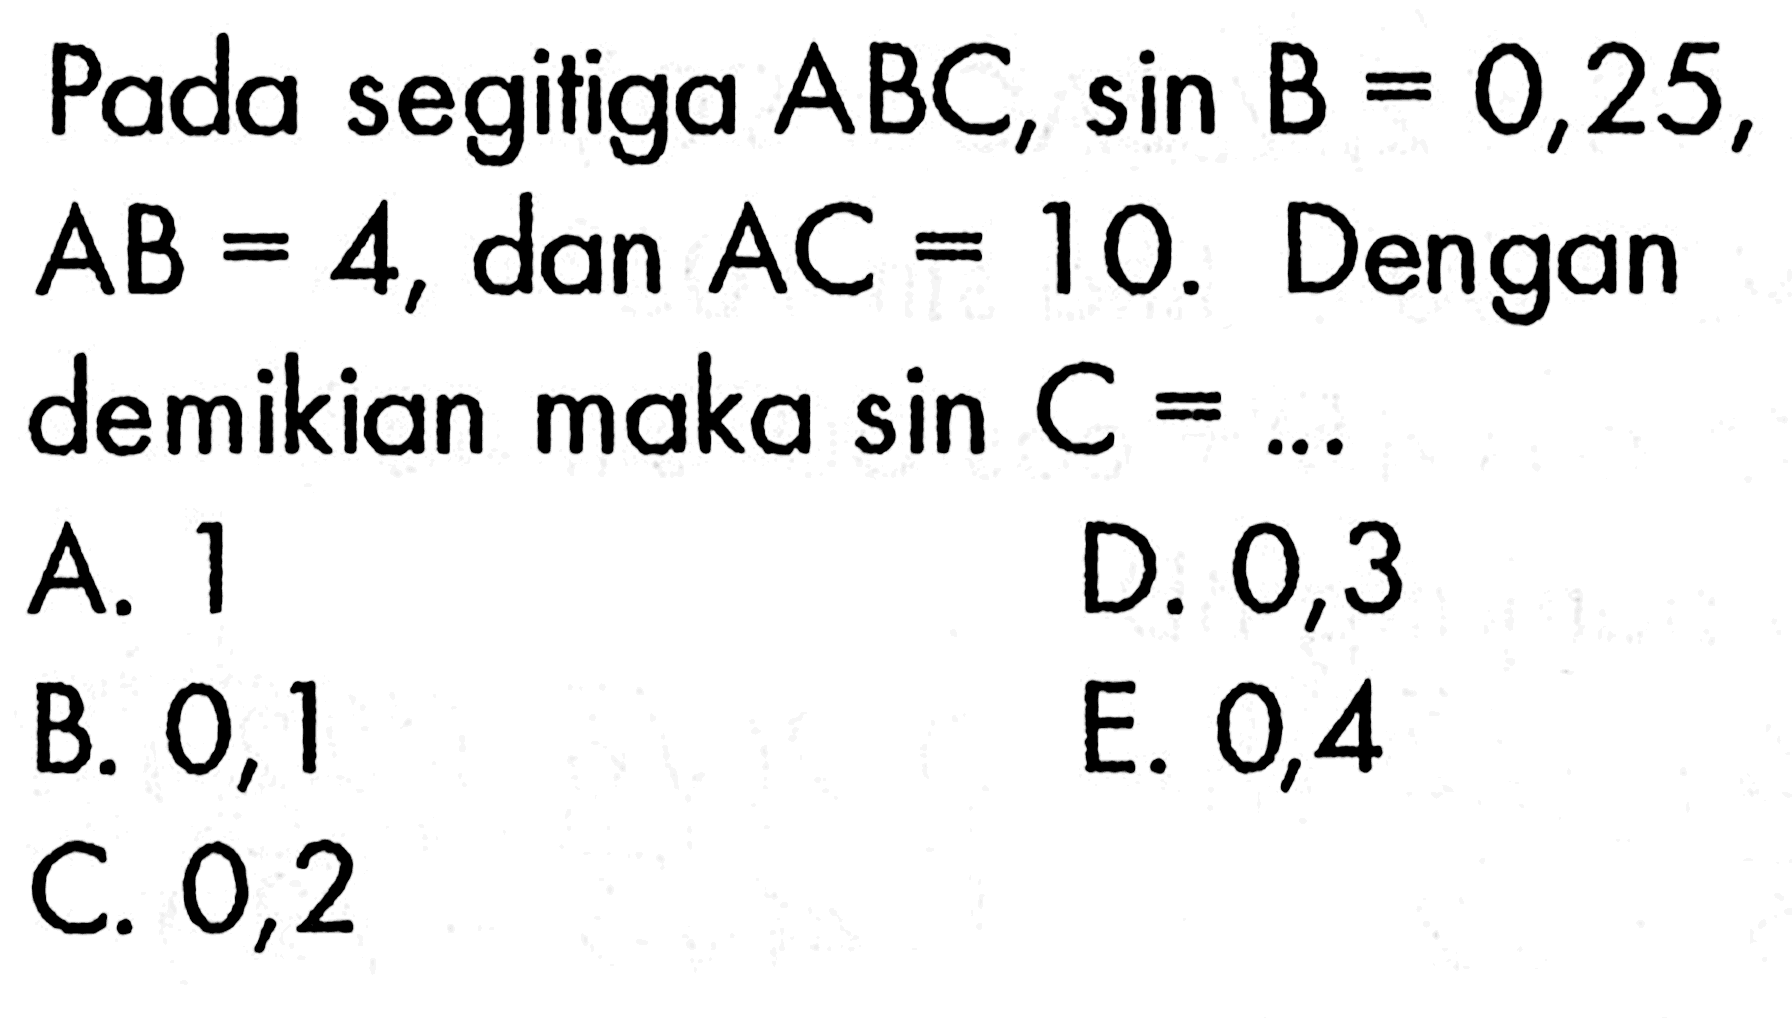 Pada segitiga  ABC, sin B=0,25,  AB=4, dan AC=10. Dengan demikian maka sin C=.... 